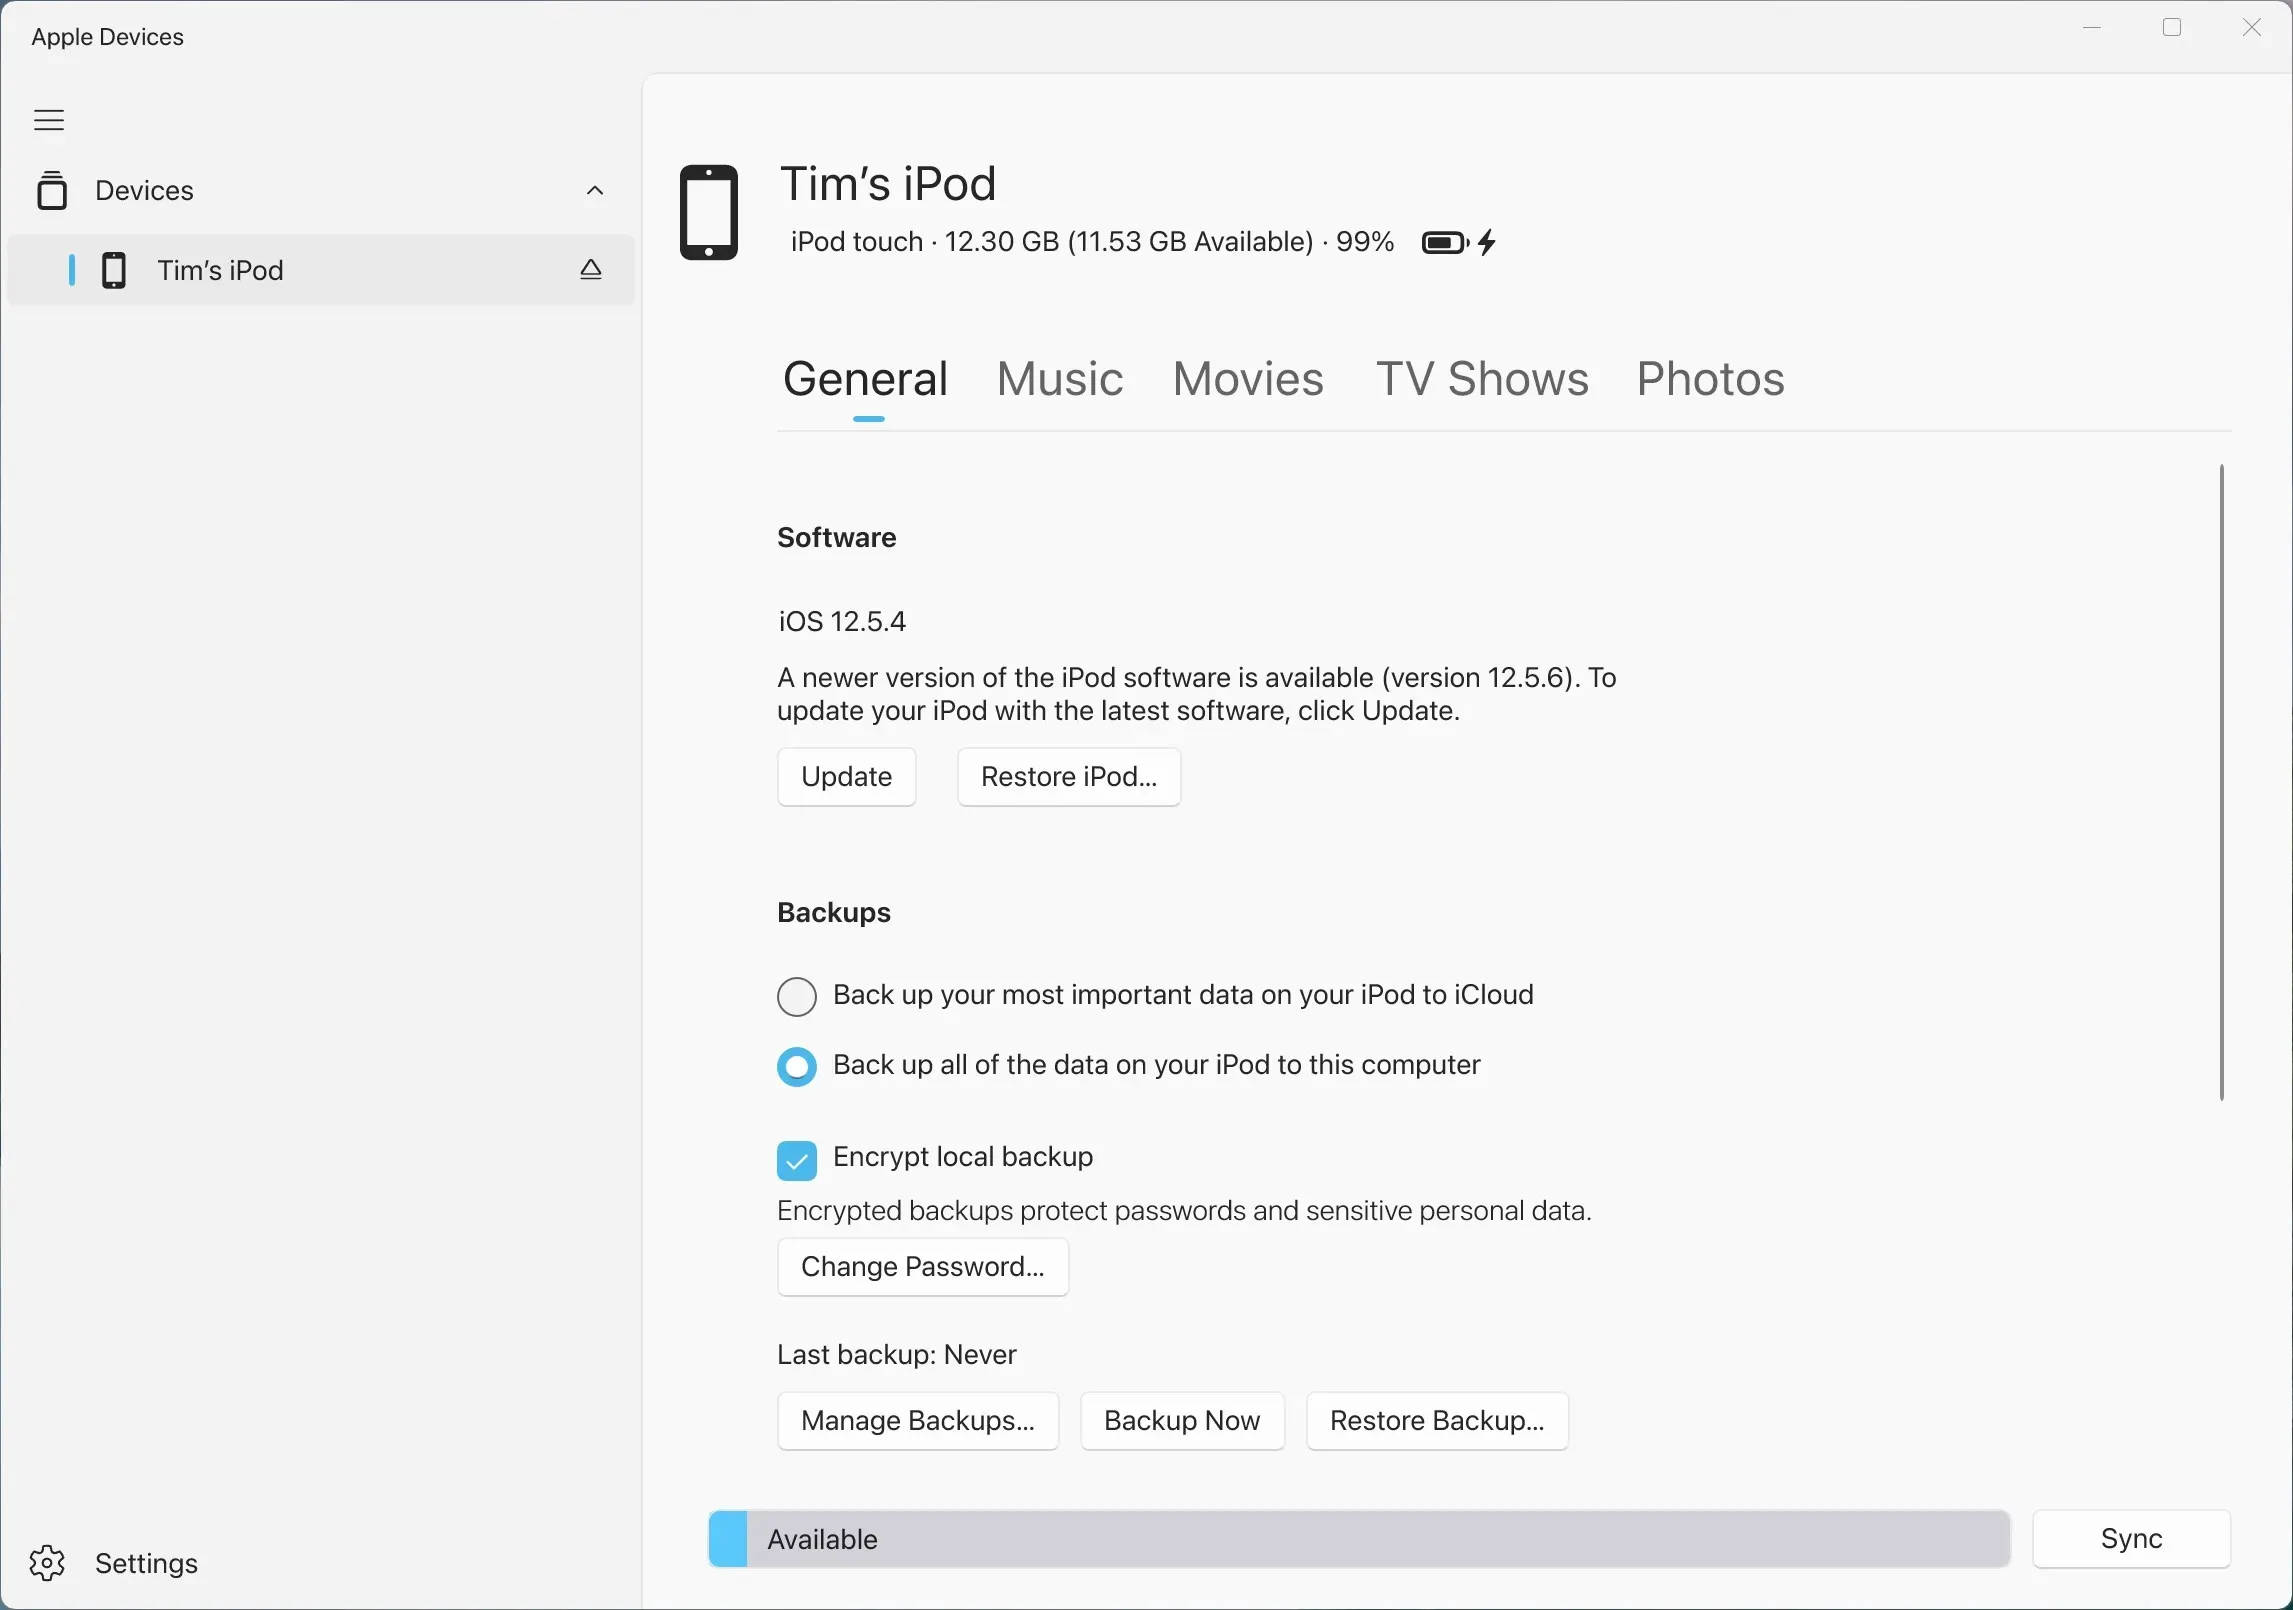 Приложение Apple Devices для Windows, демонстрирующее управление подключенным iPod